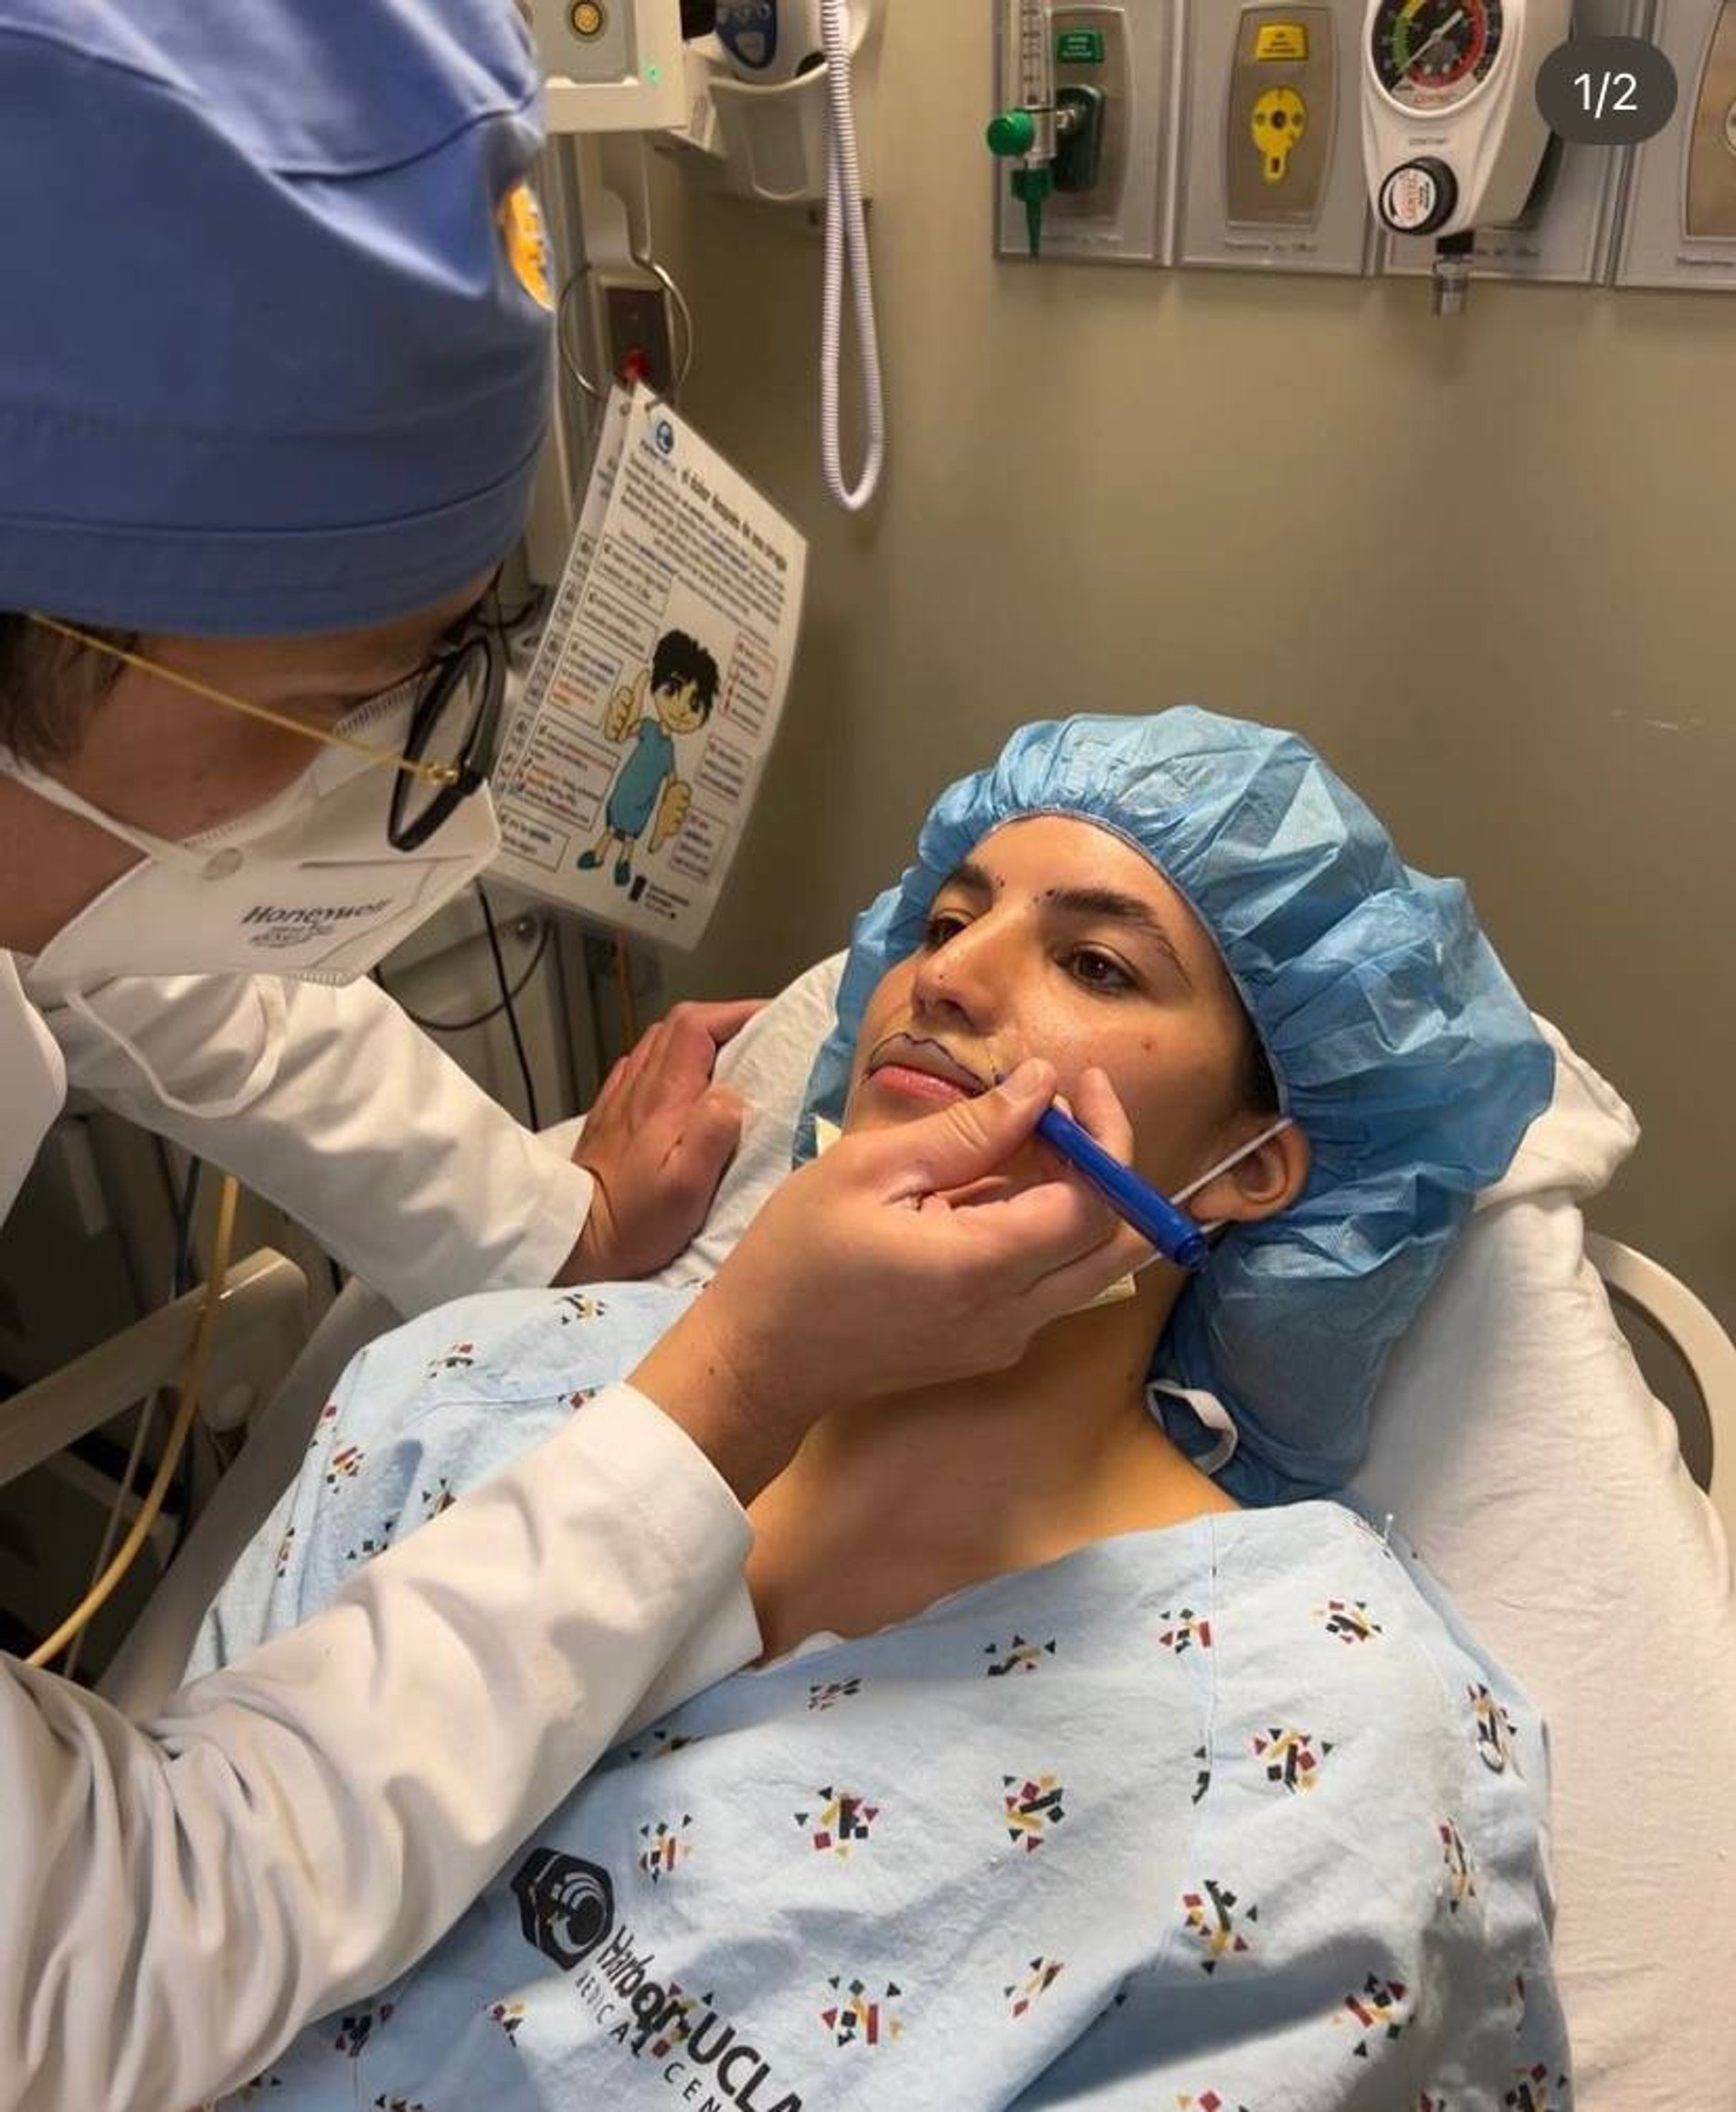 Хирург рисует верхнюю губу на лице Бруклинн перед финальной операцией
Фото: Инстаграм (запрещен в РФ) @brookhoury